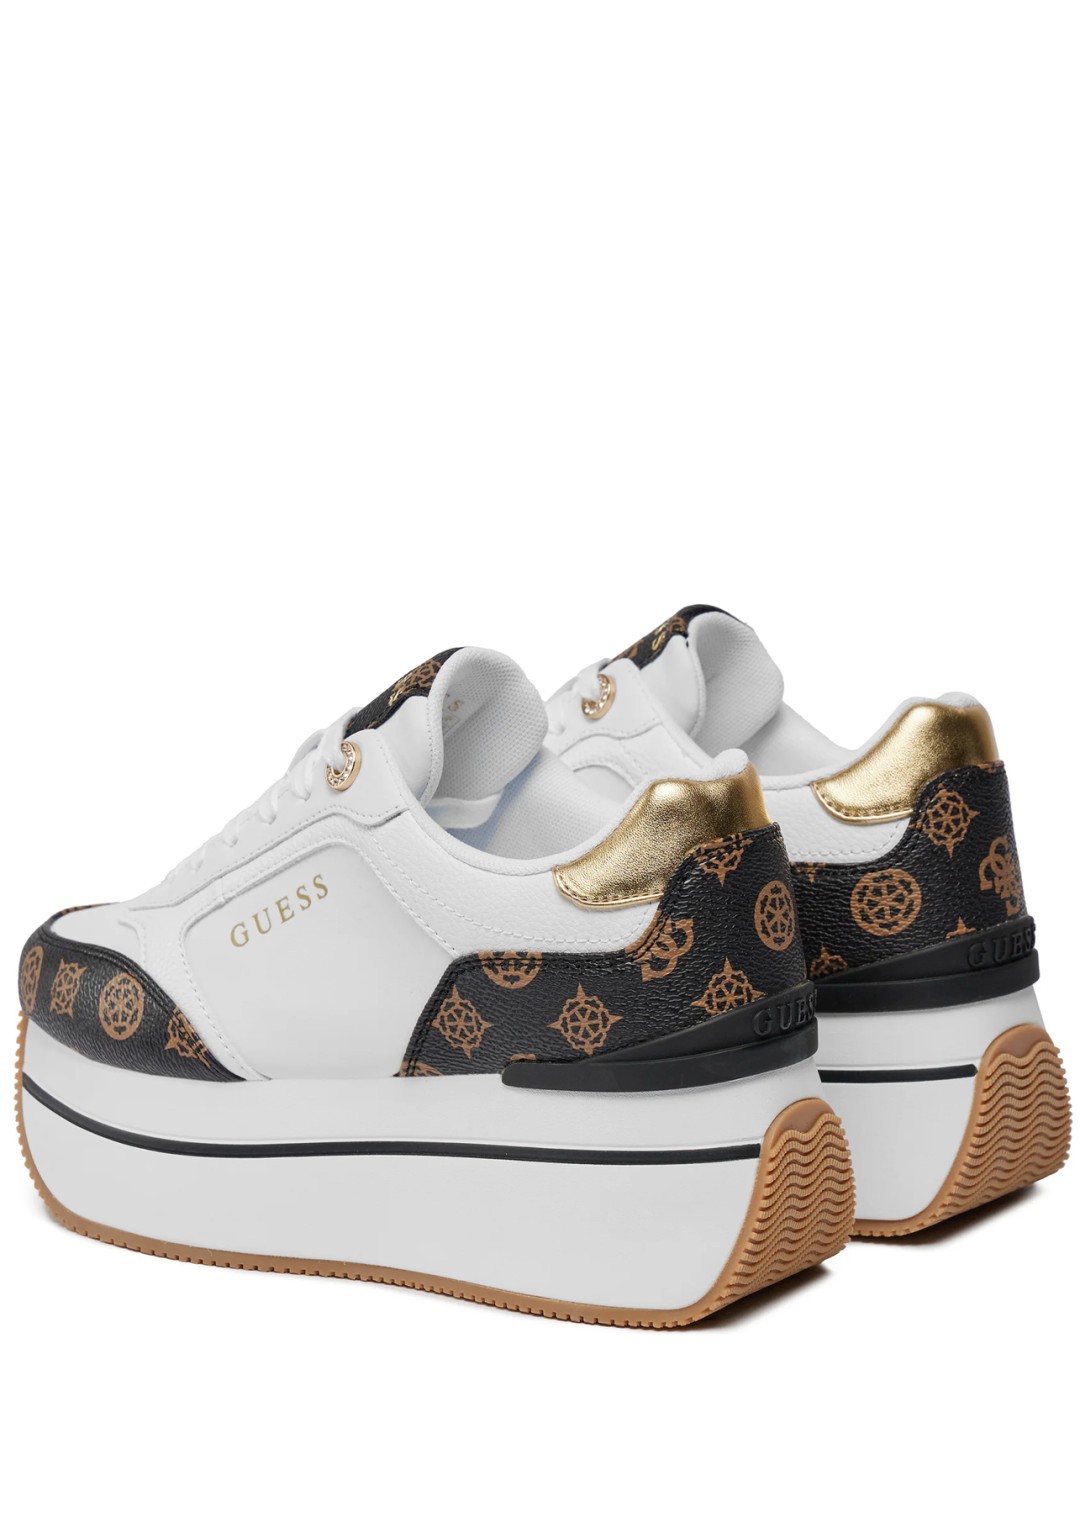 Guess - Sneaker platform - Donna - FLPCM4FAL12 WHIBR